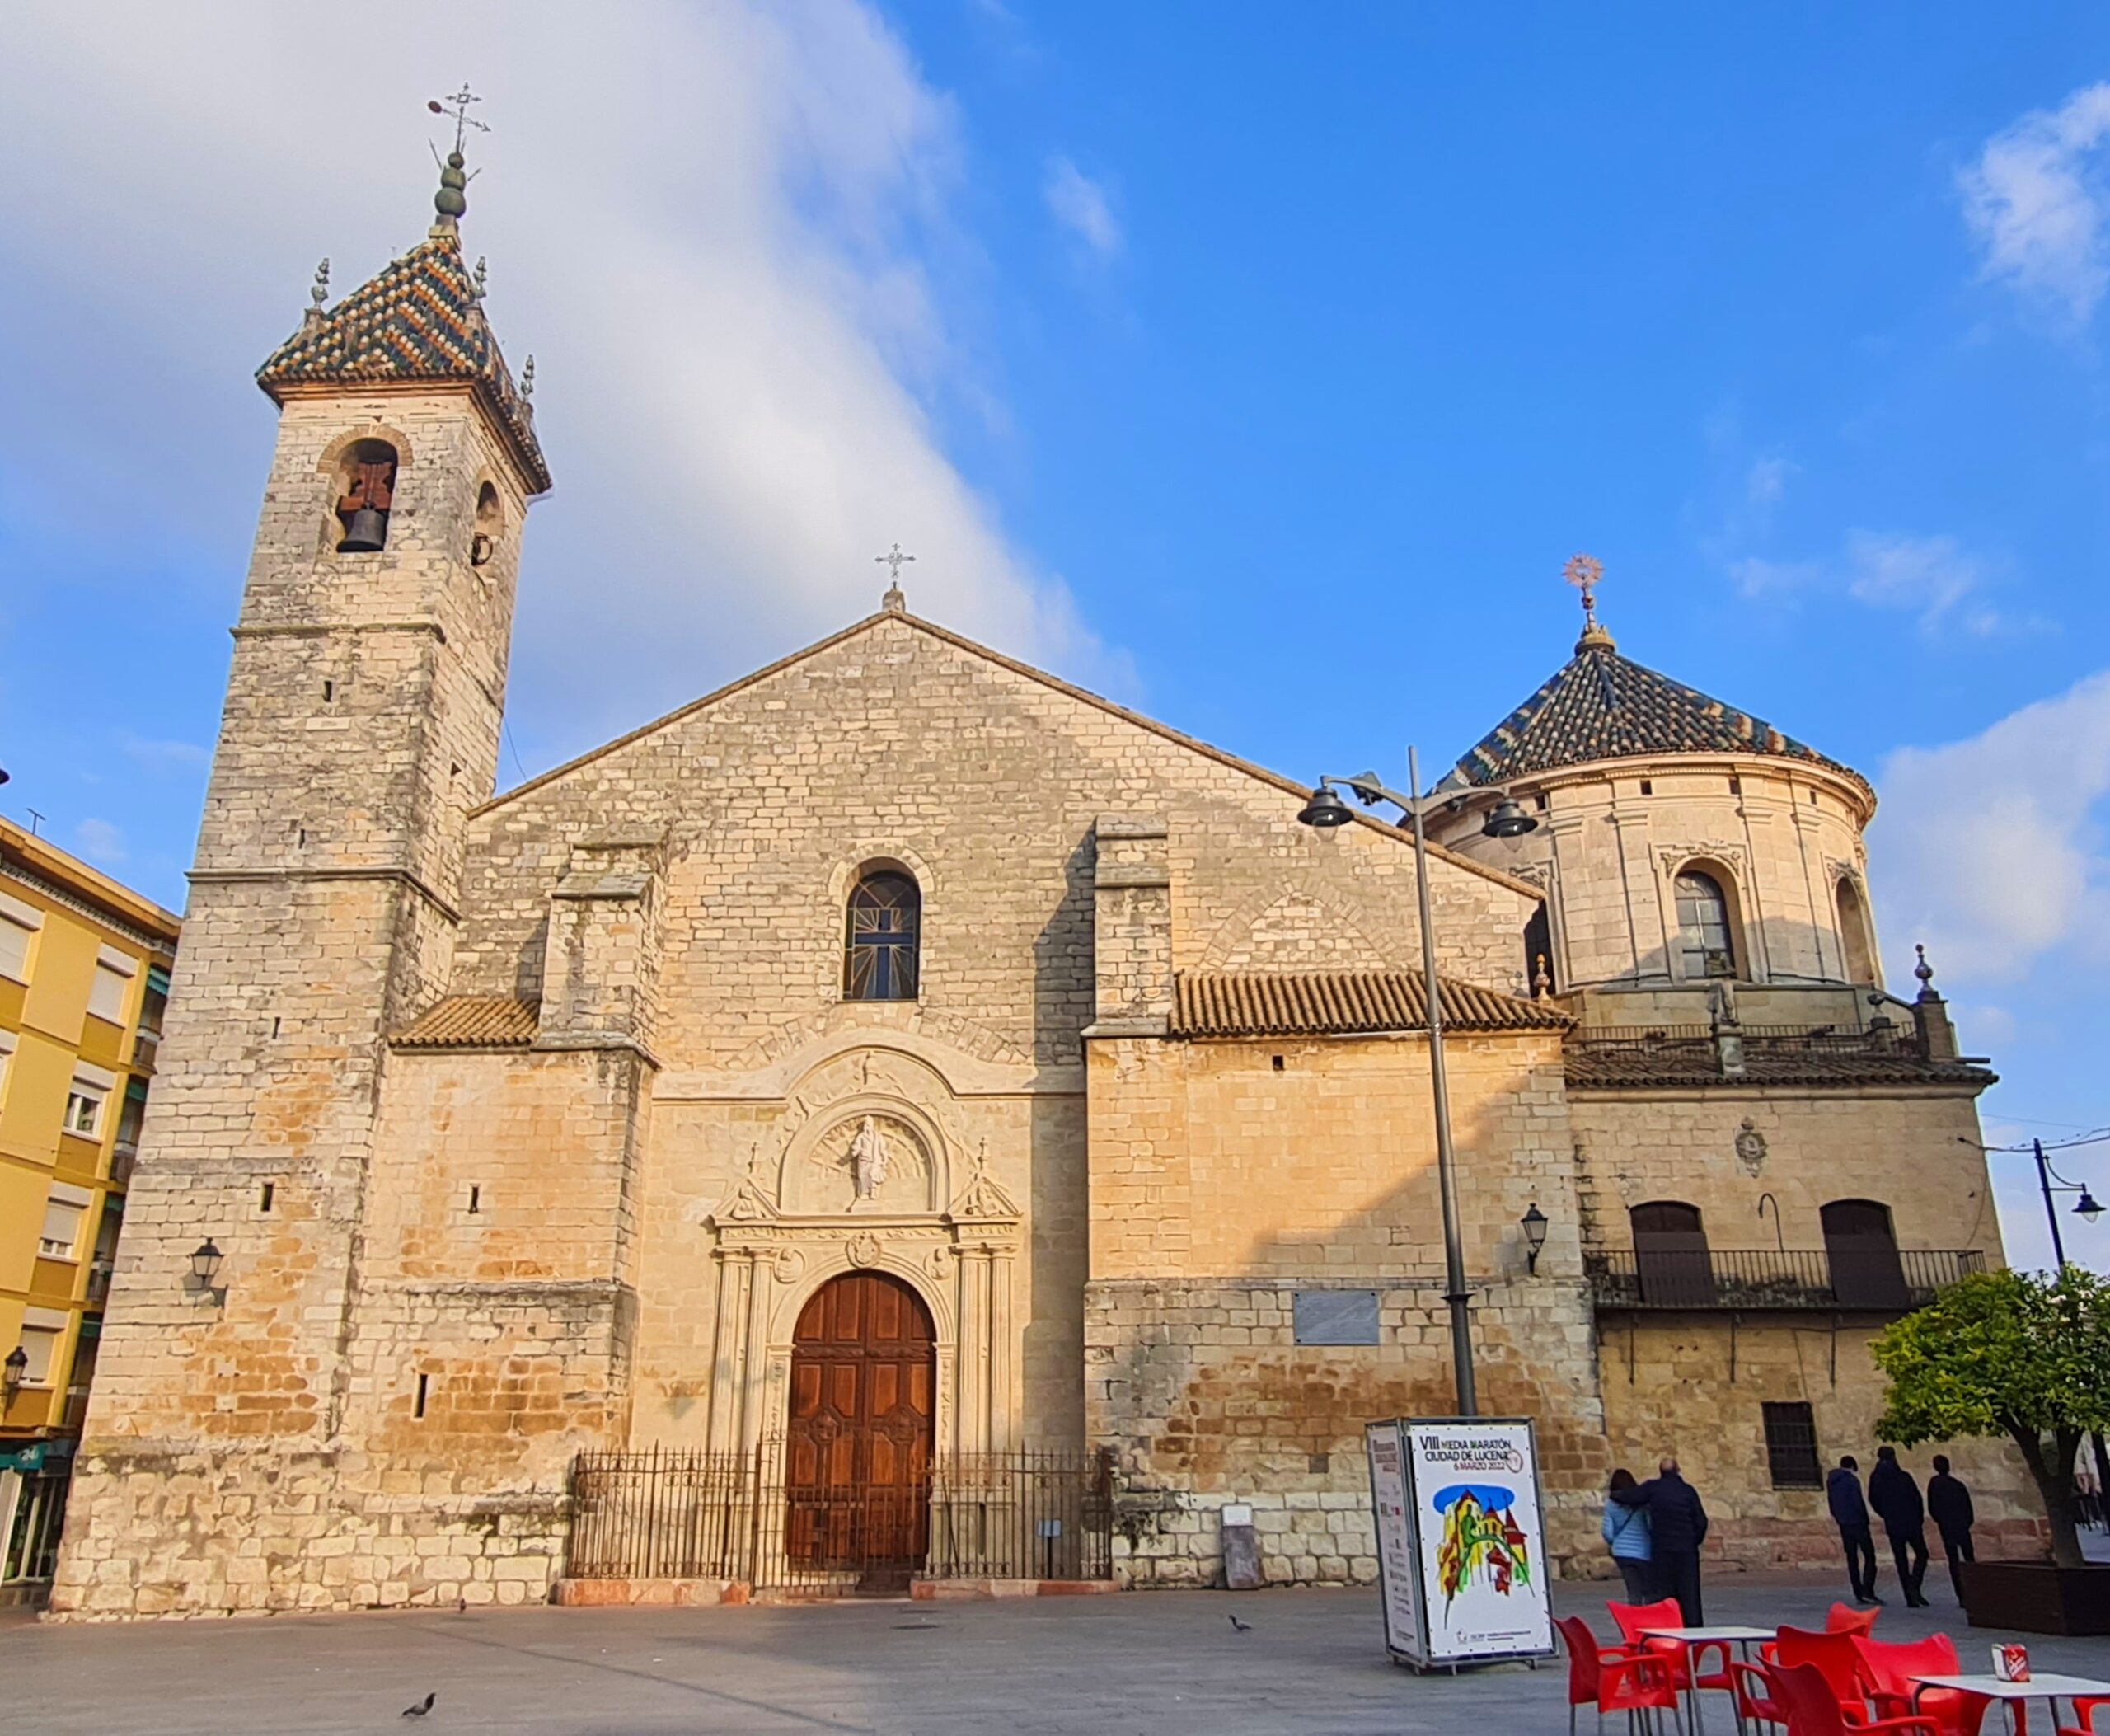 La Iglesia de San Juan Bautista: Un Refugio de Fe y Espiritualidad en Santillana del Mar.